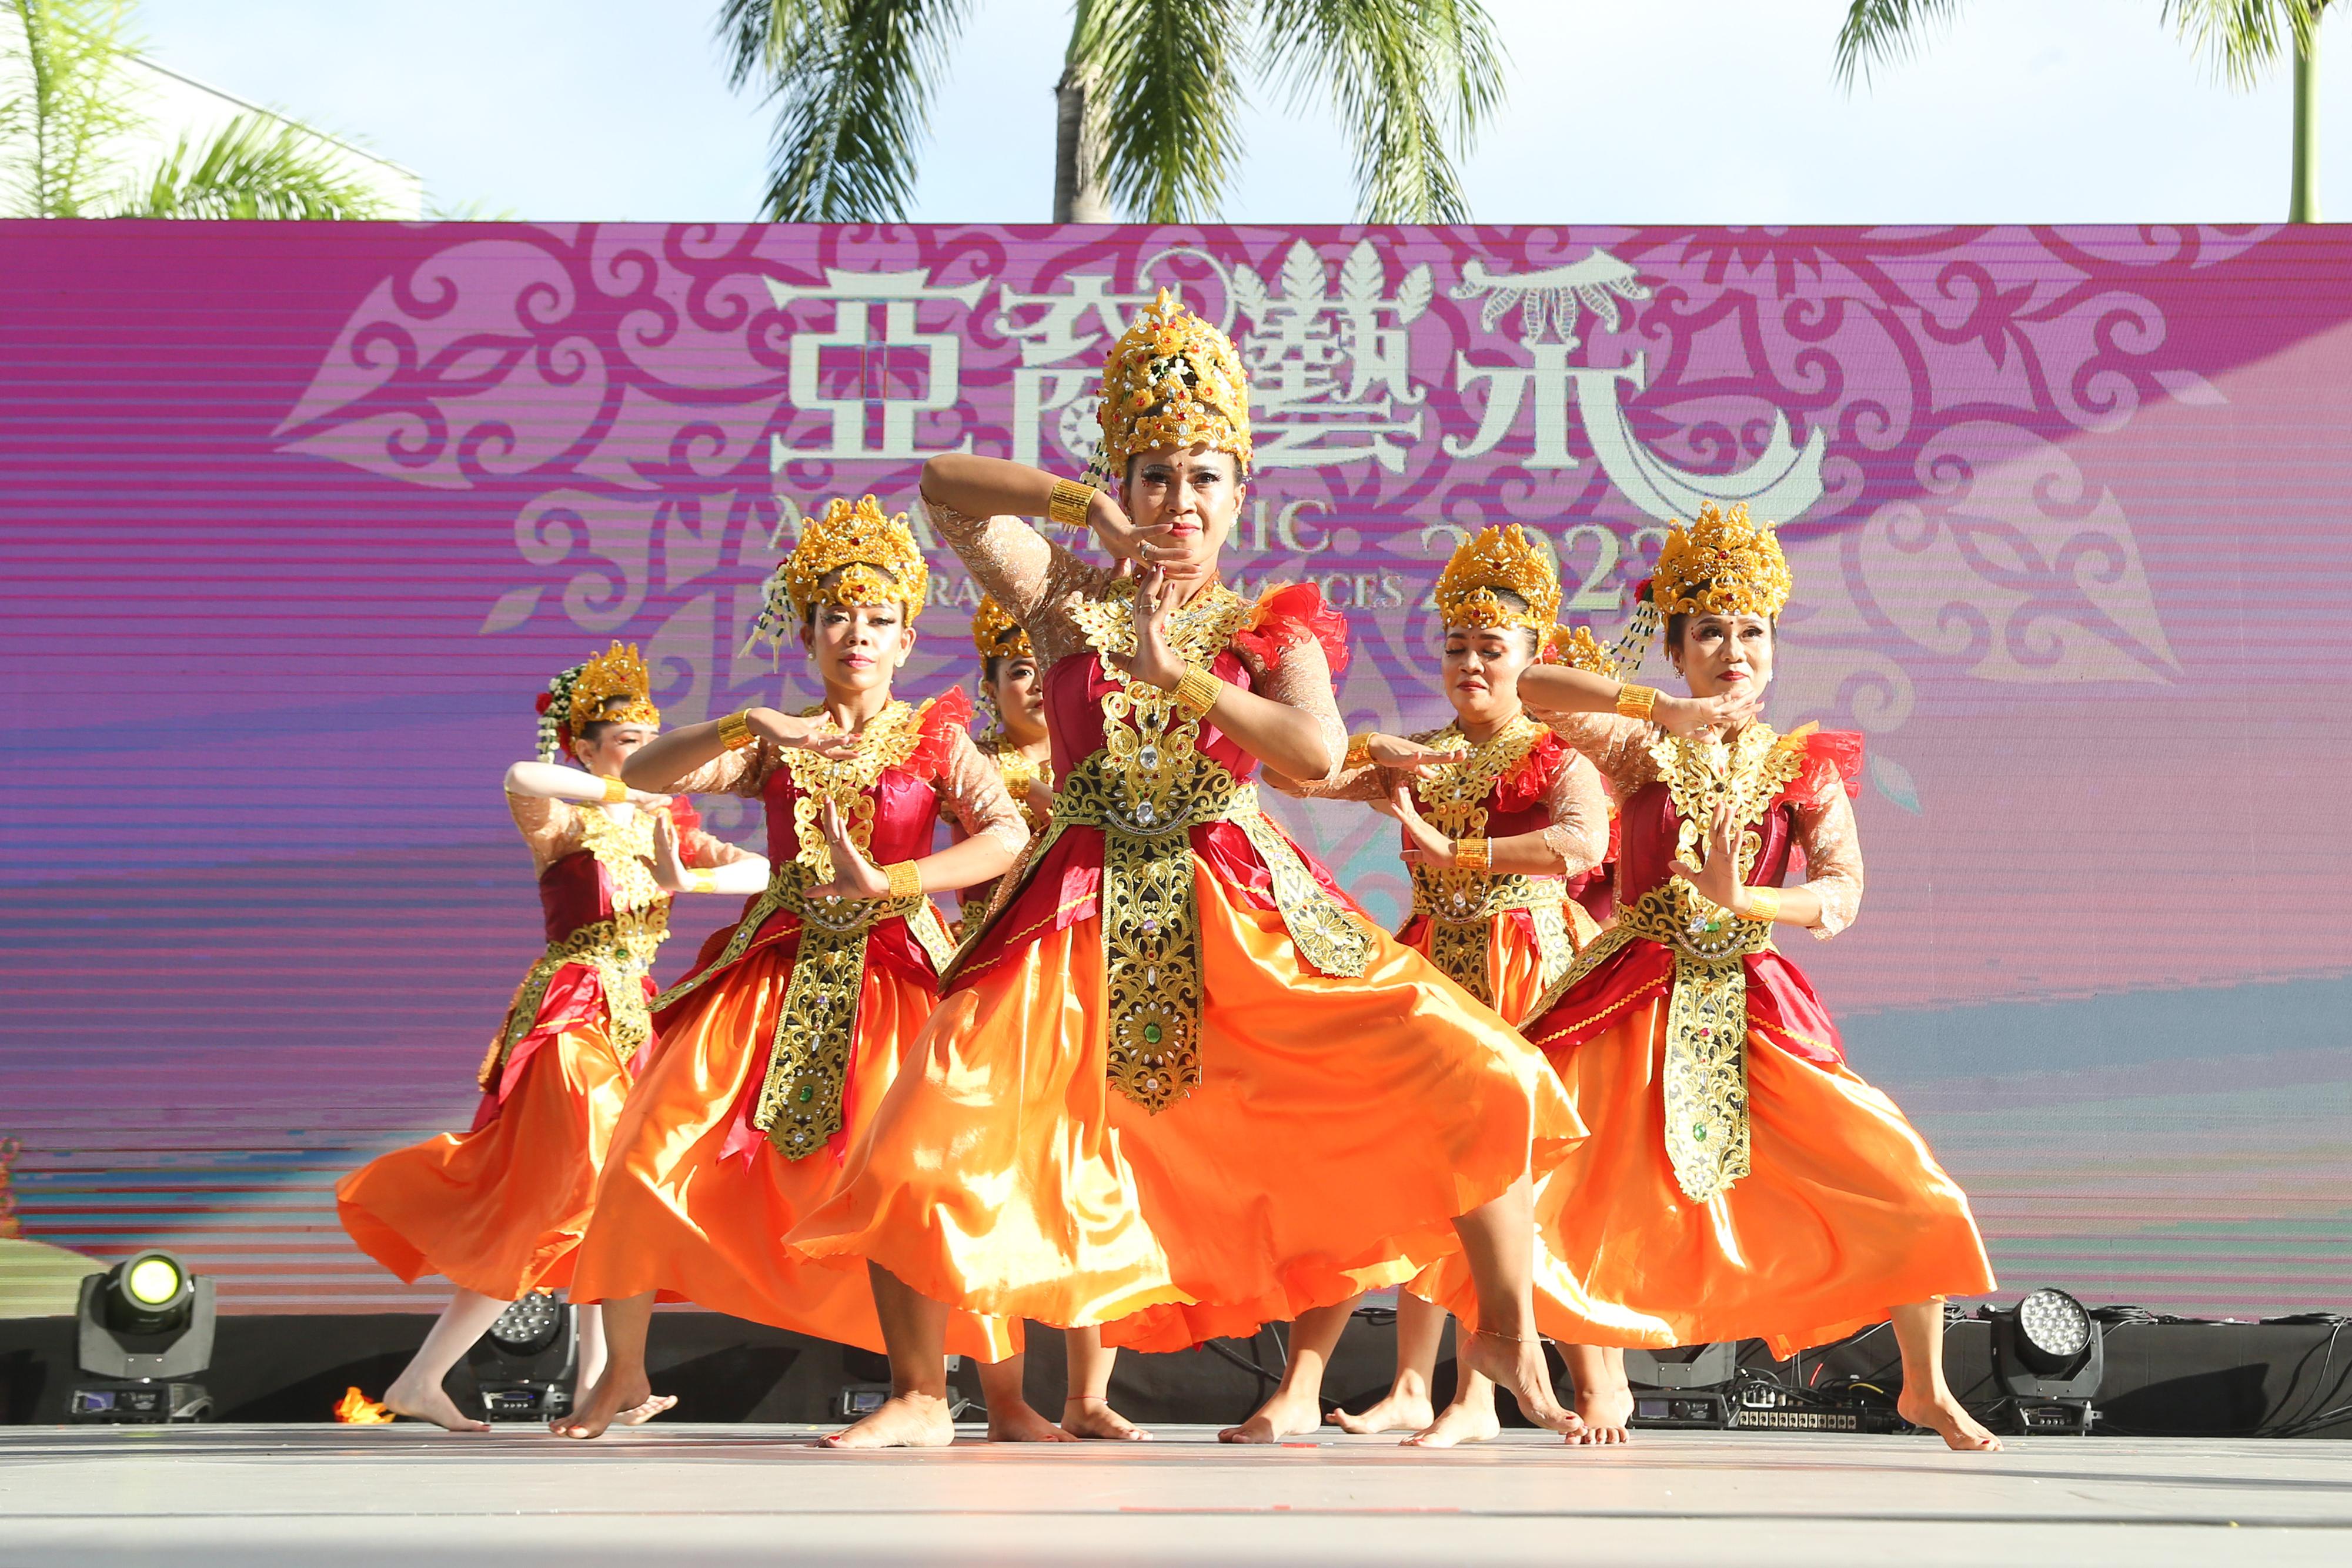 康乐及文化事务署今日（十一月十二日）下午在香港文化中心露天广场举行「亚裔艺采」，透过丰富的民族表演、民族服装头饰展示和周边活动，展现亚洲各地的文化和演艺才华。图示印尼的舞蹈表演。